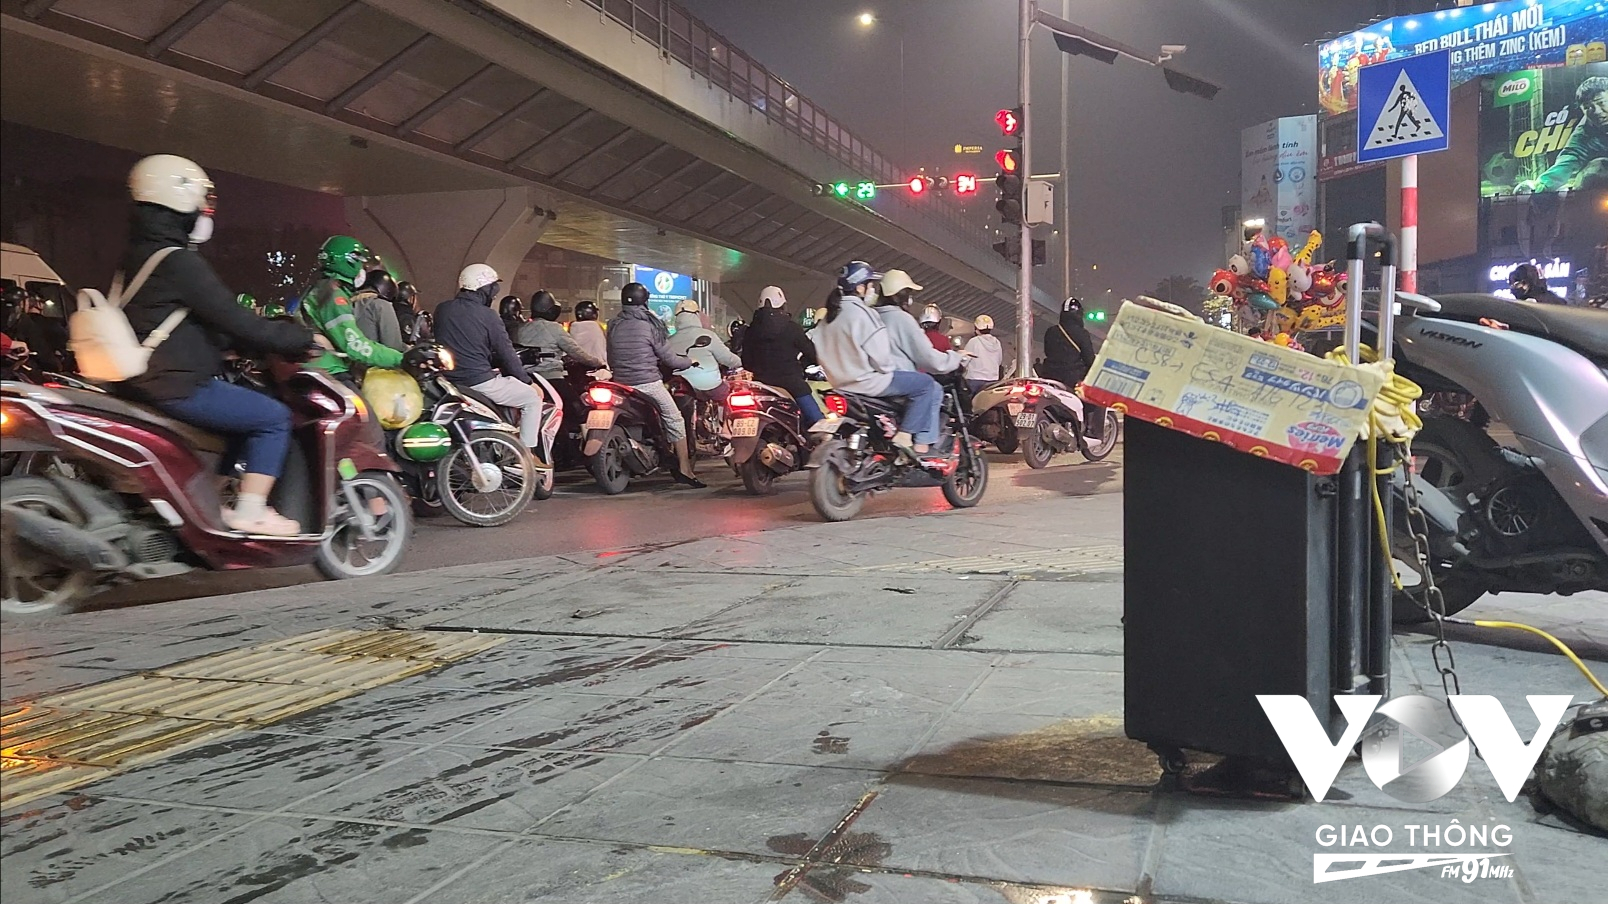 Tại ngã tư Minh Khai-Tam Trinh, người tham gia giao thông dừng chờ đèn đỏ vừa chịu đựng tiếng còi xe, vừa bị tra tấn bởi chiếc loa bật nhạc remix của cửa hàng